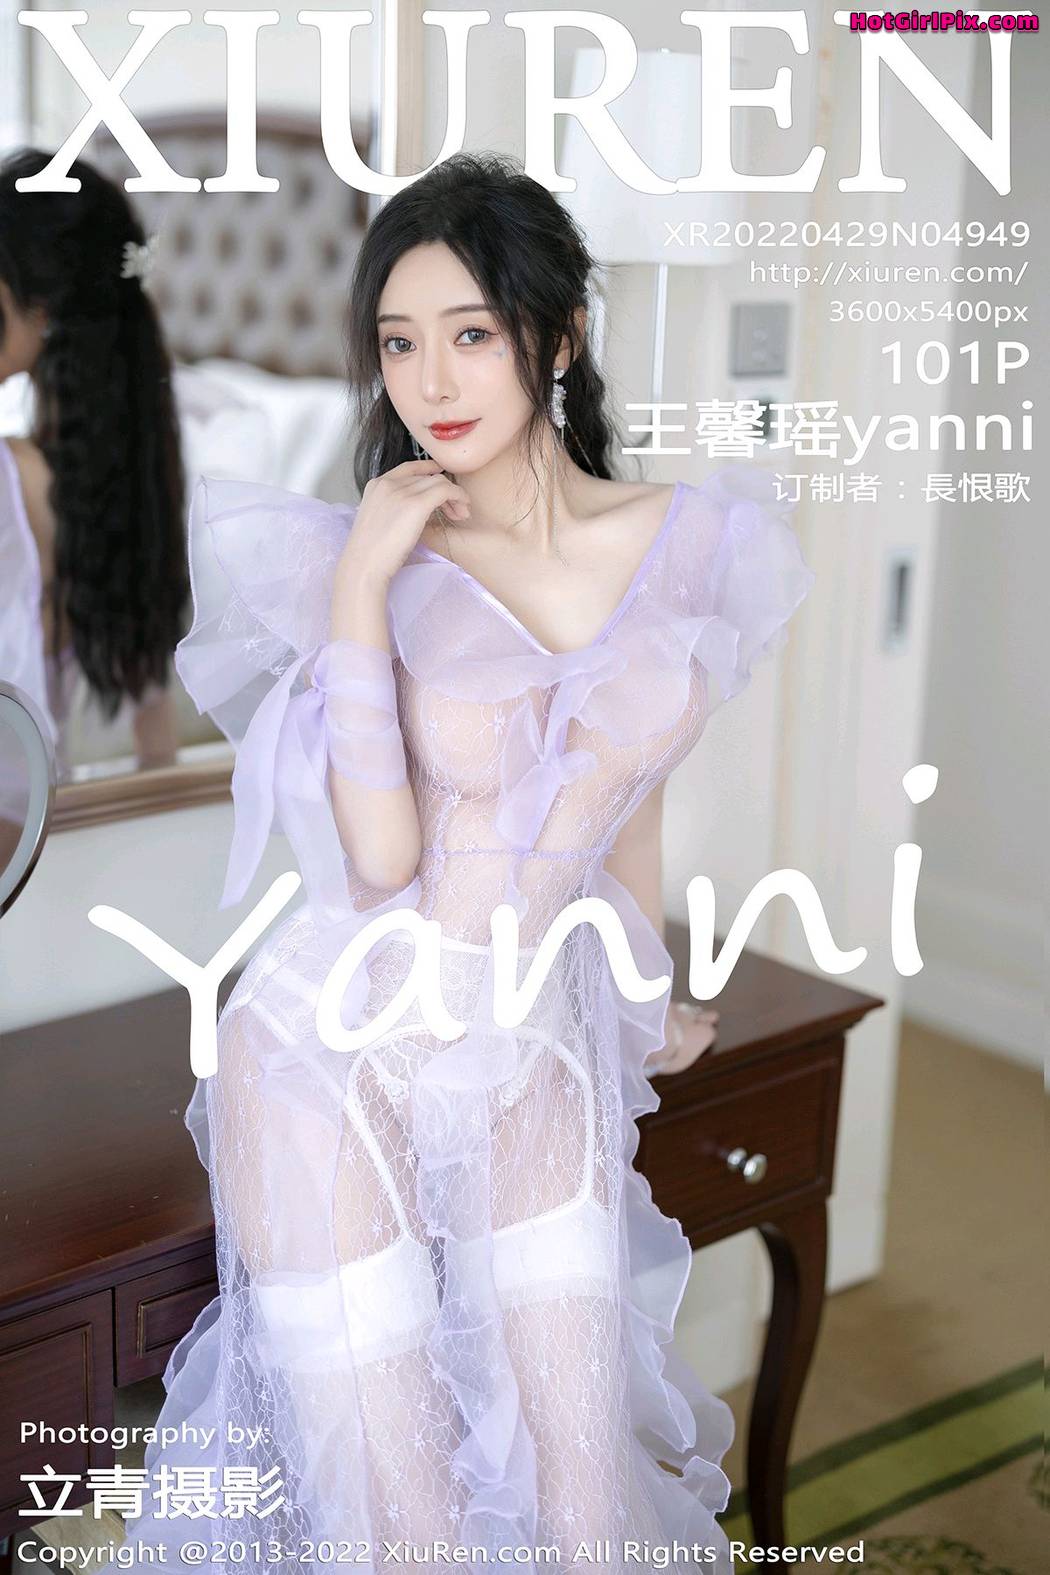 [XIUREN] No.4949 Wang Xin Yao 王馨瑶yanni Cover Photo